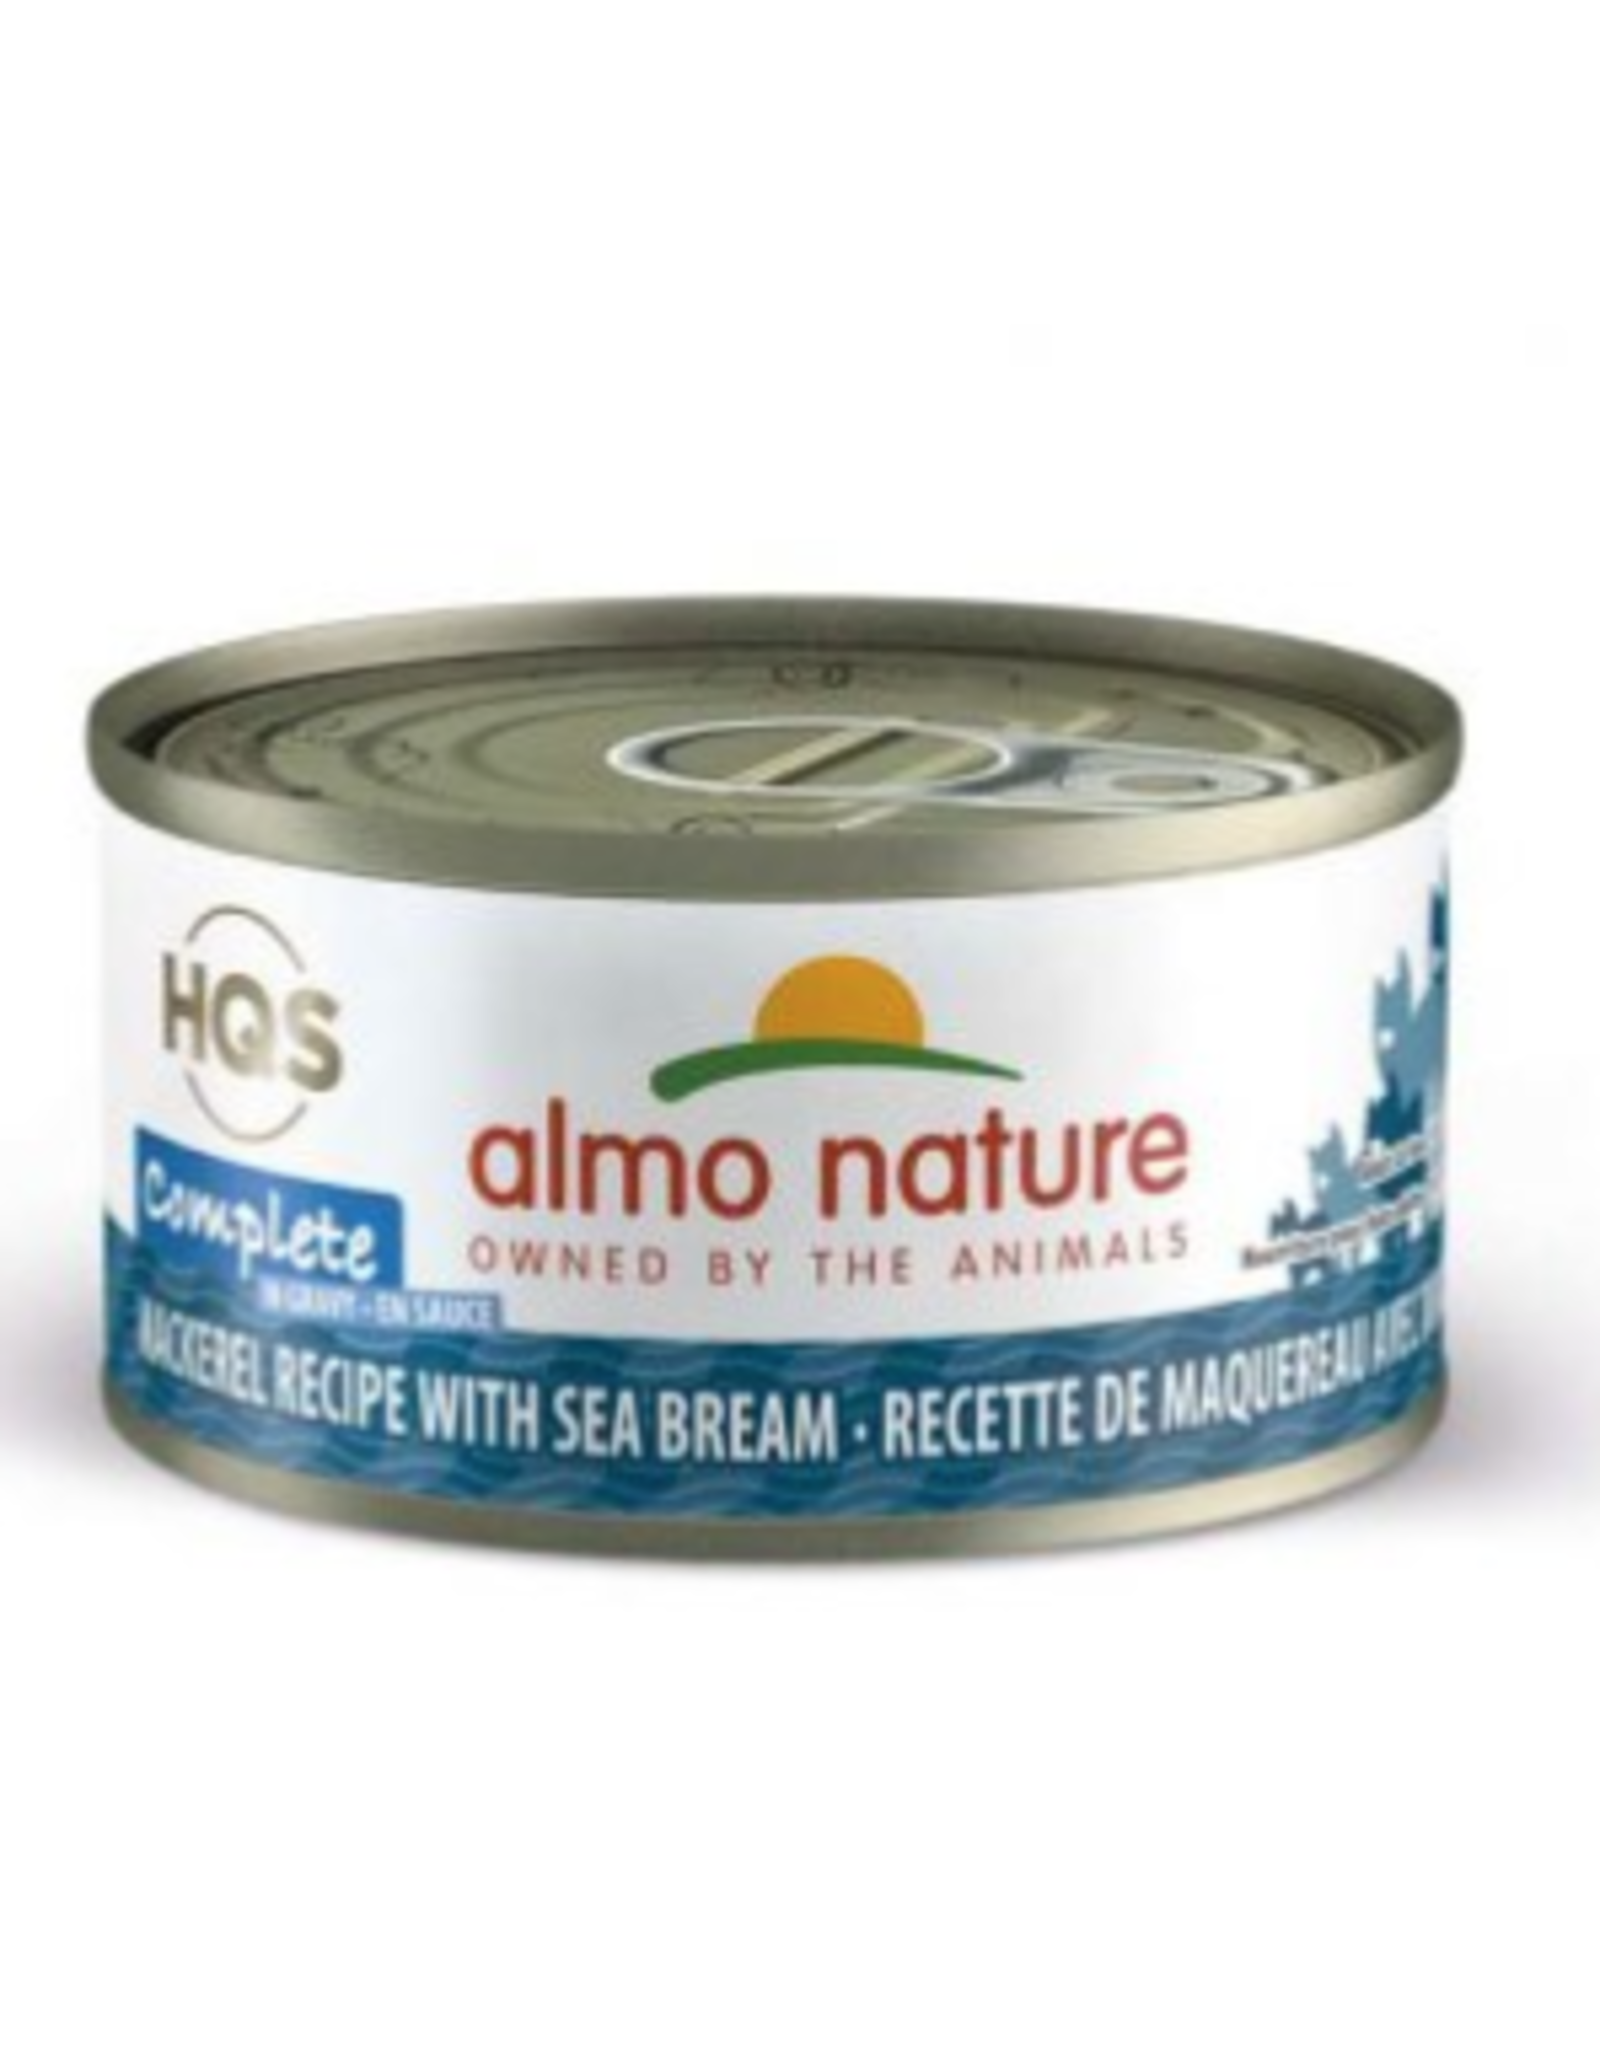 Almo Nature Almo Nature HQS Complete Mackerel Recipe w/ Sea Bream in Gravy Cat Food 2.47 Oz